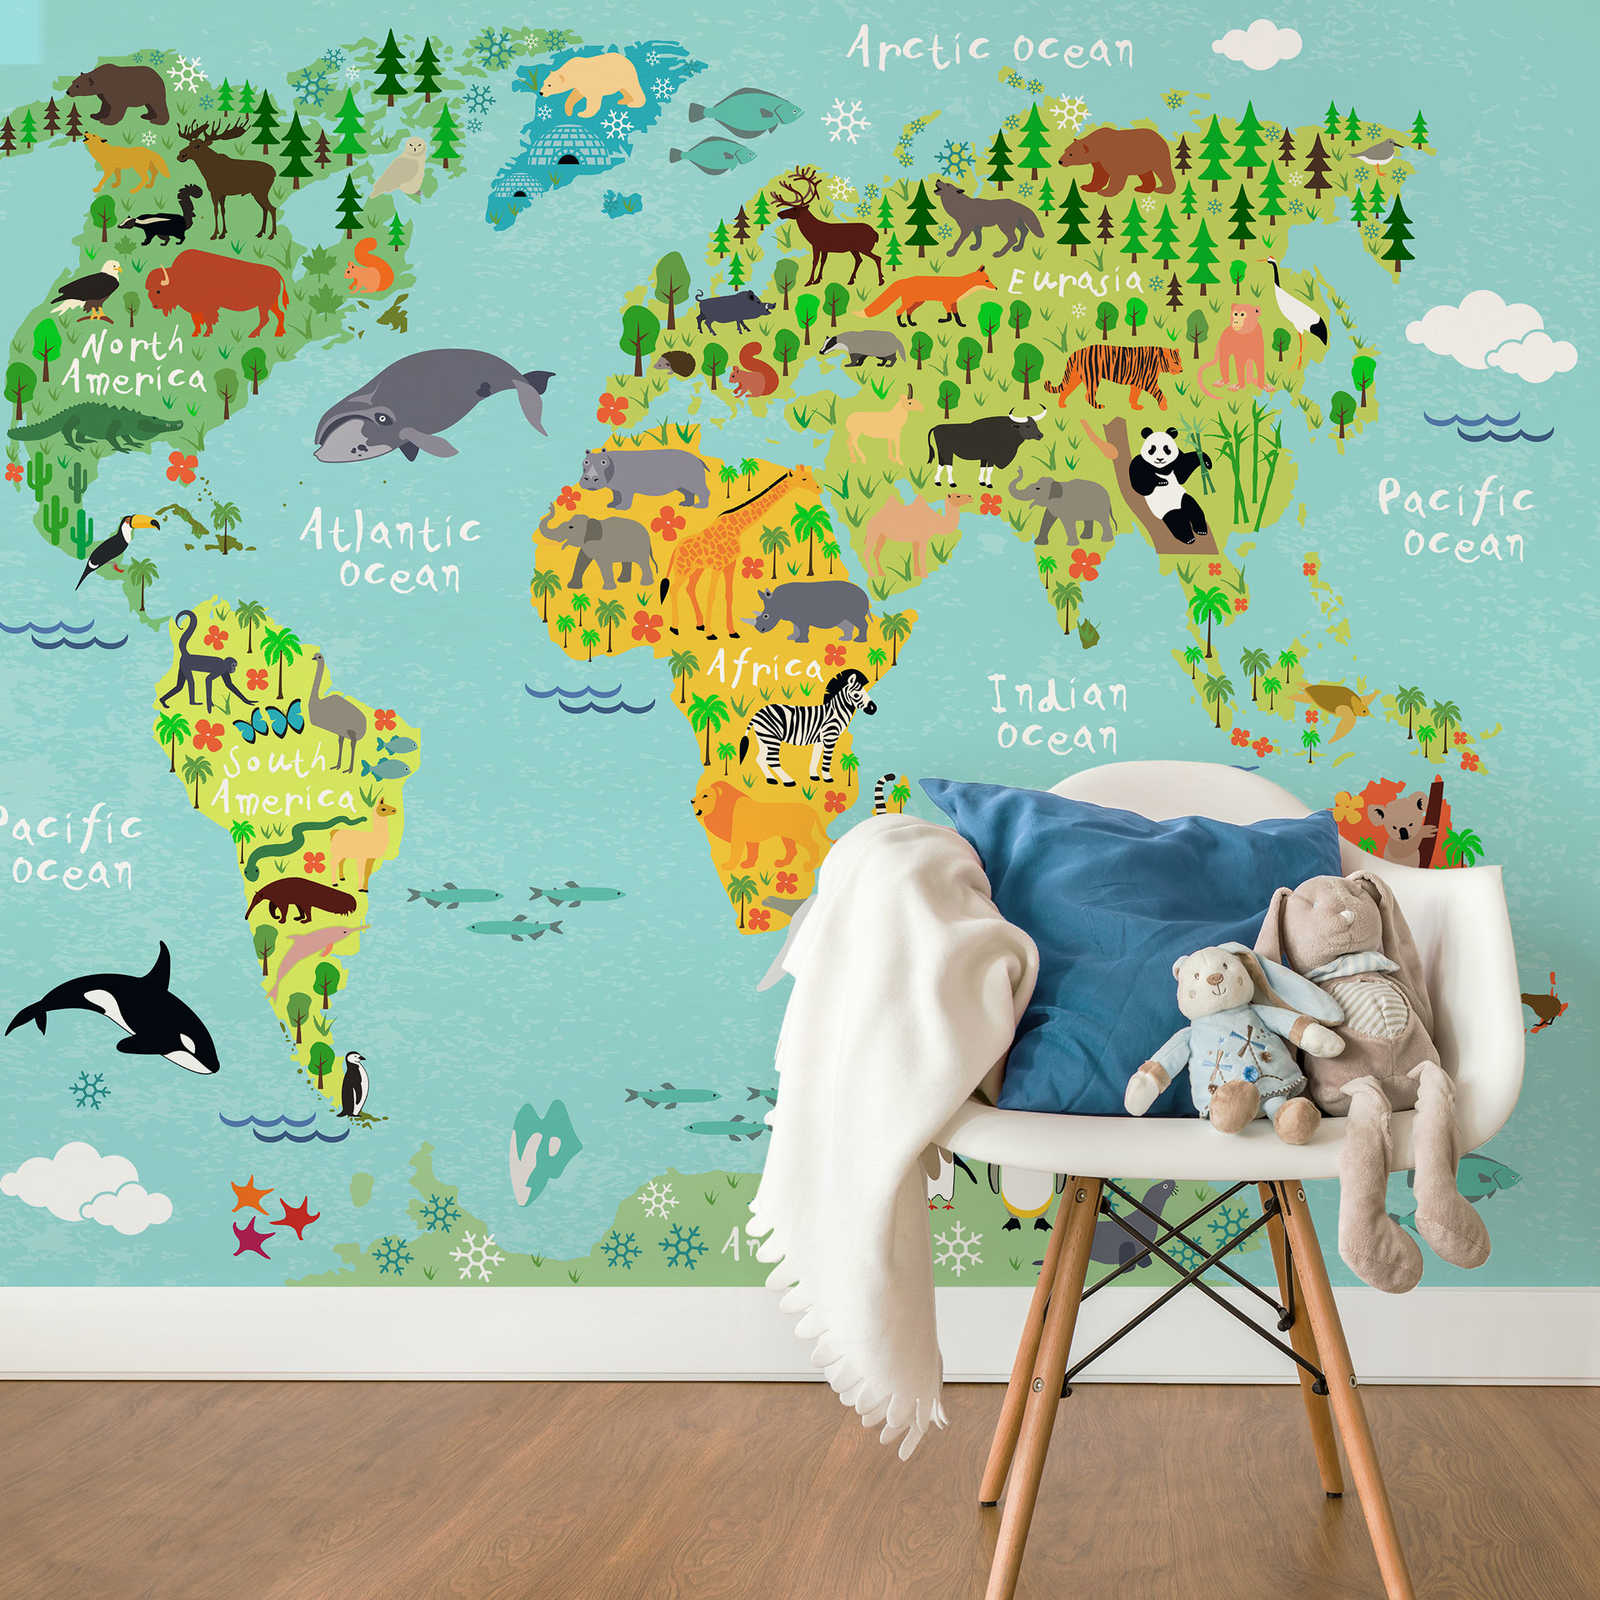             Papier peint carte du monde adapté aux enfants - multicolore
        